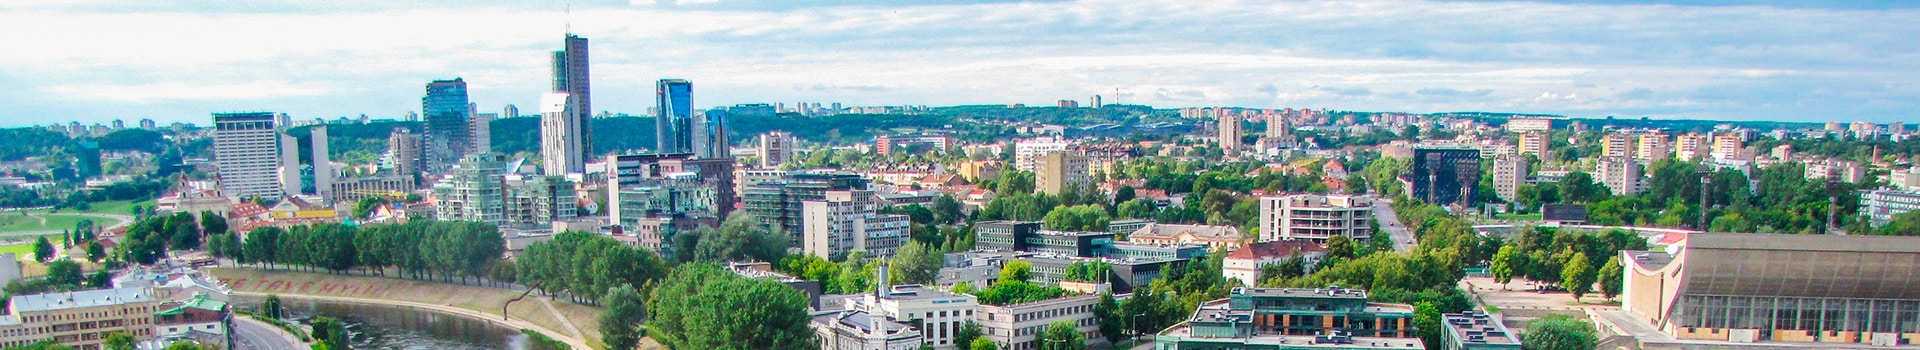 Niza - Vilnius